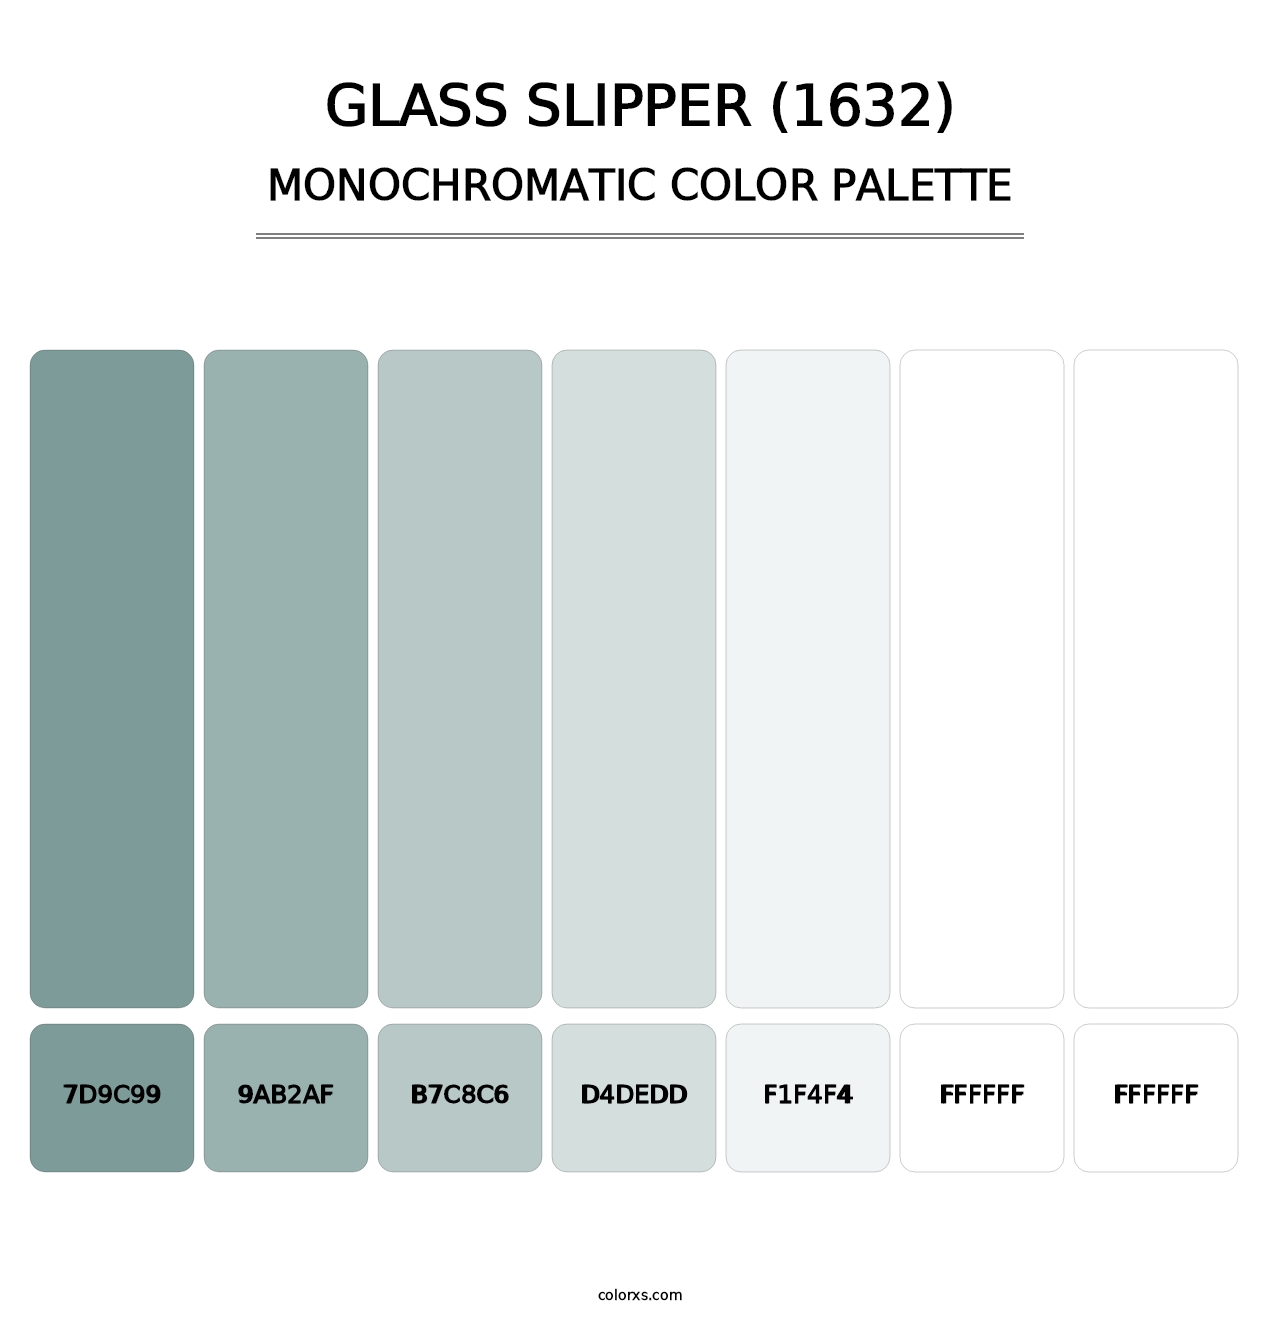 Glass Slipper (1632) - Monochromatic Color Palette